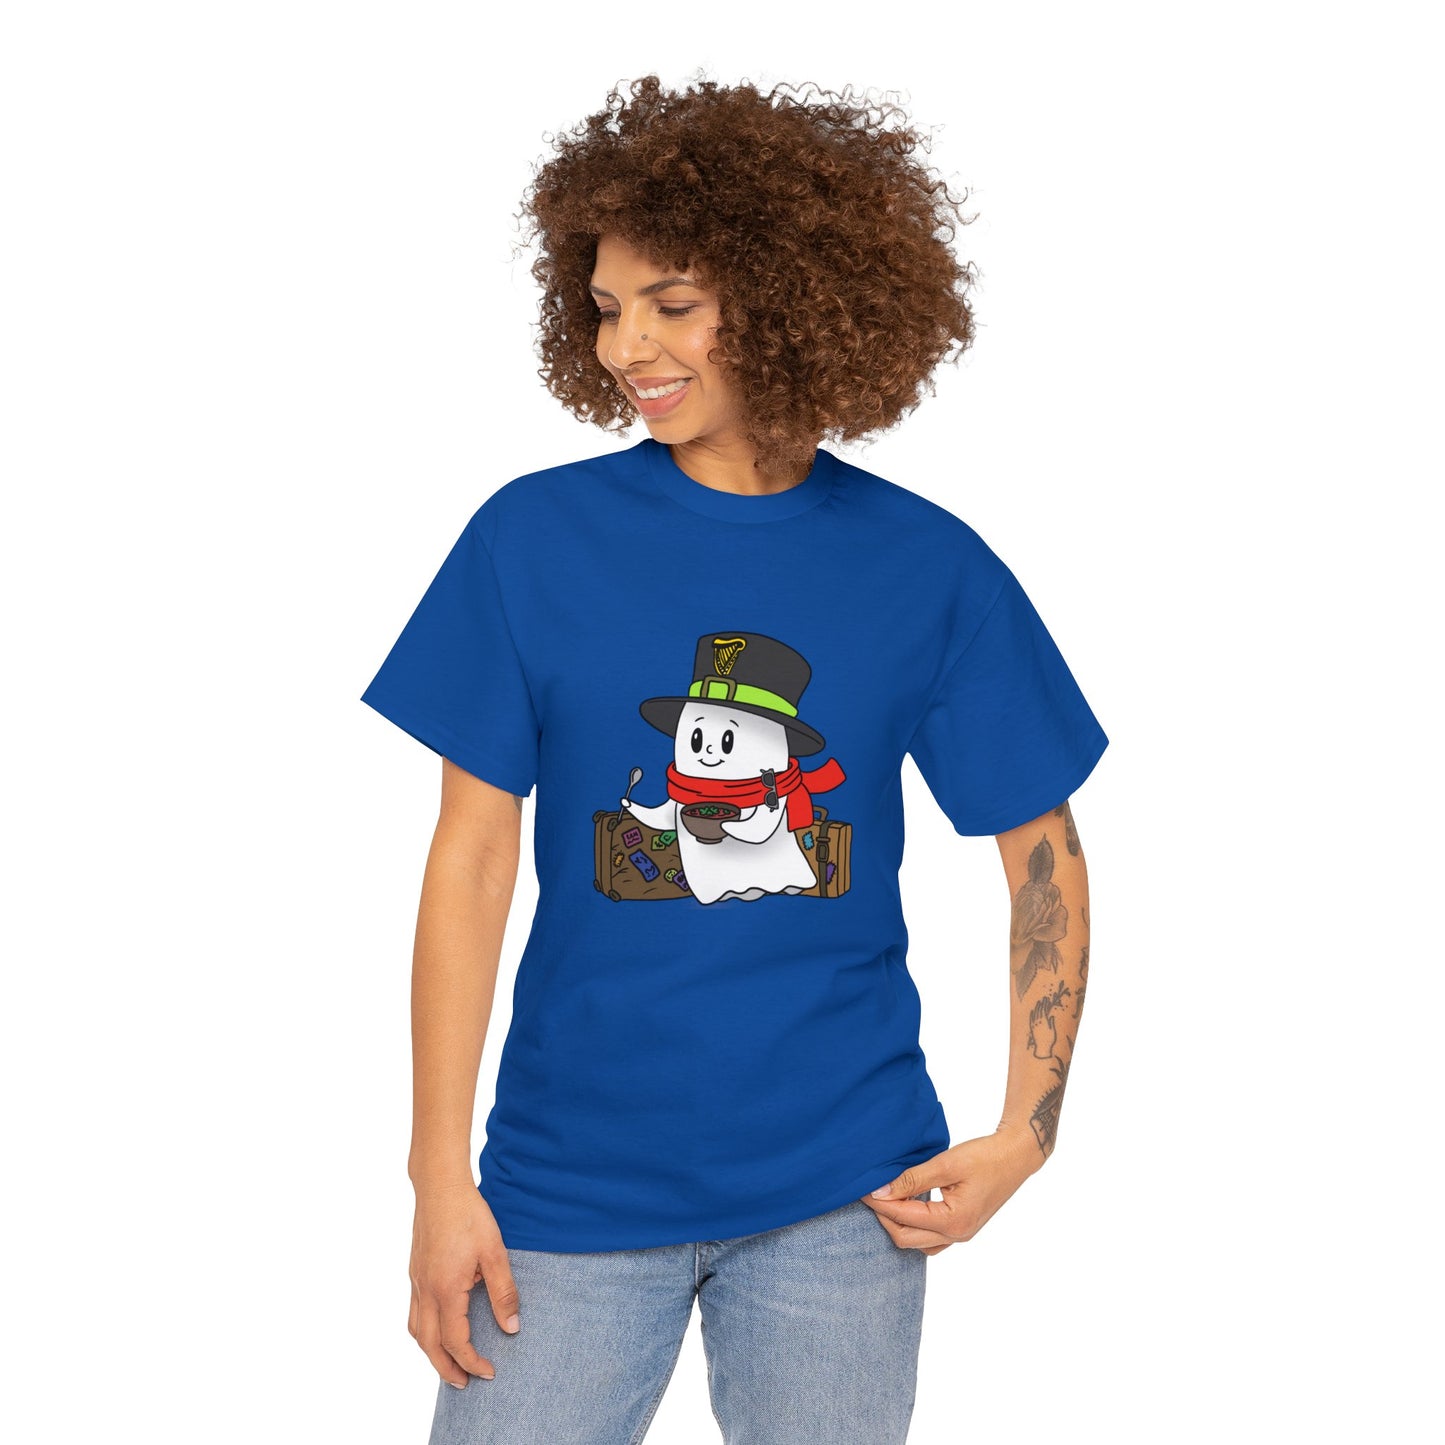 Reisegeist T-Shirt in allen Farben